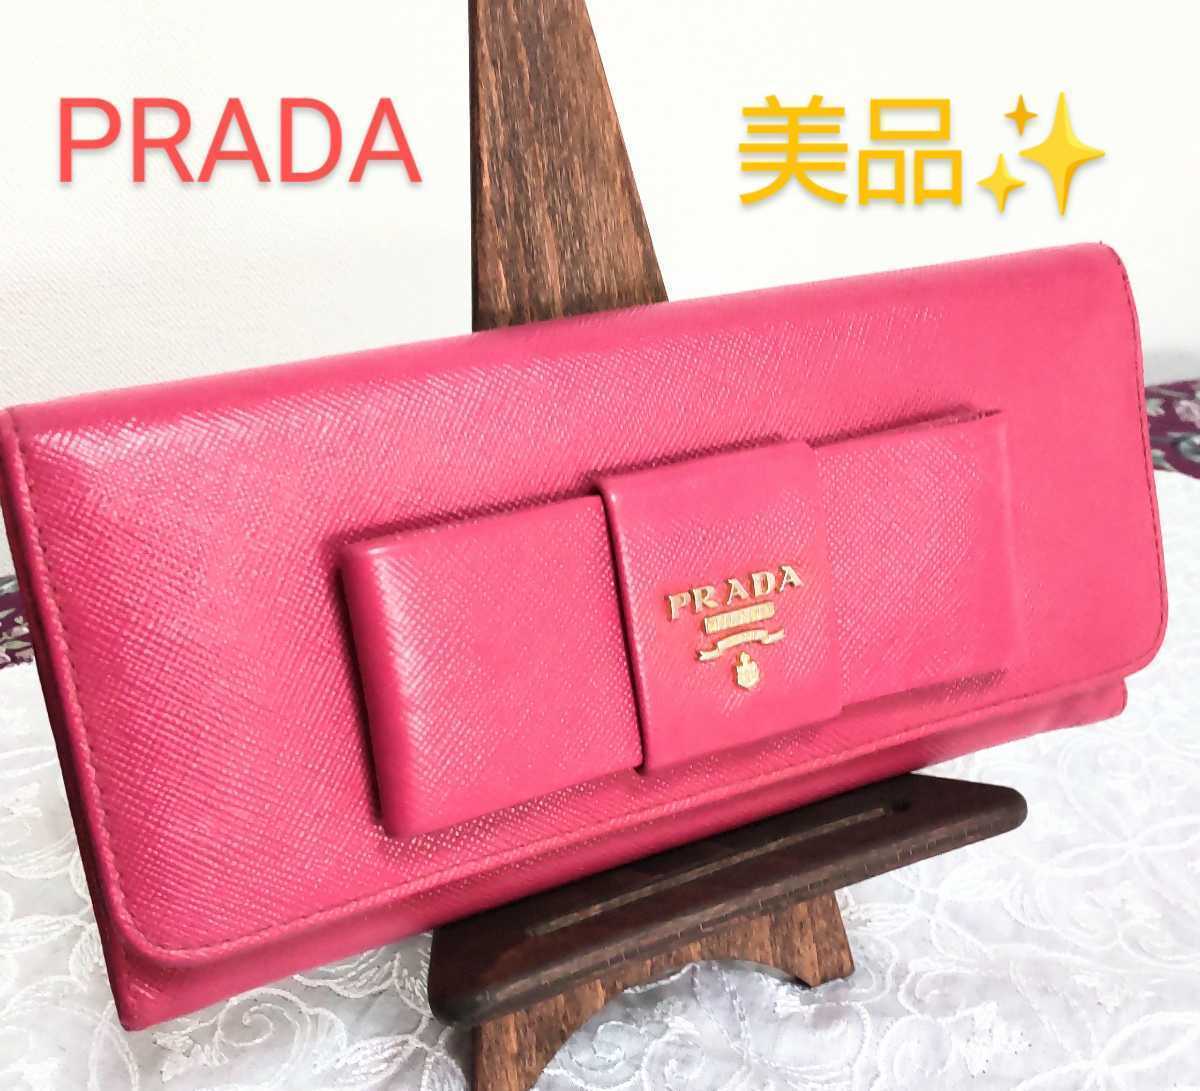 ヤフオク! -「prada 長財布 ピンク」(ファッション小物) の落札相場 